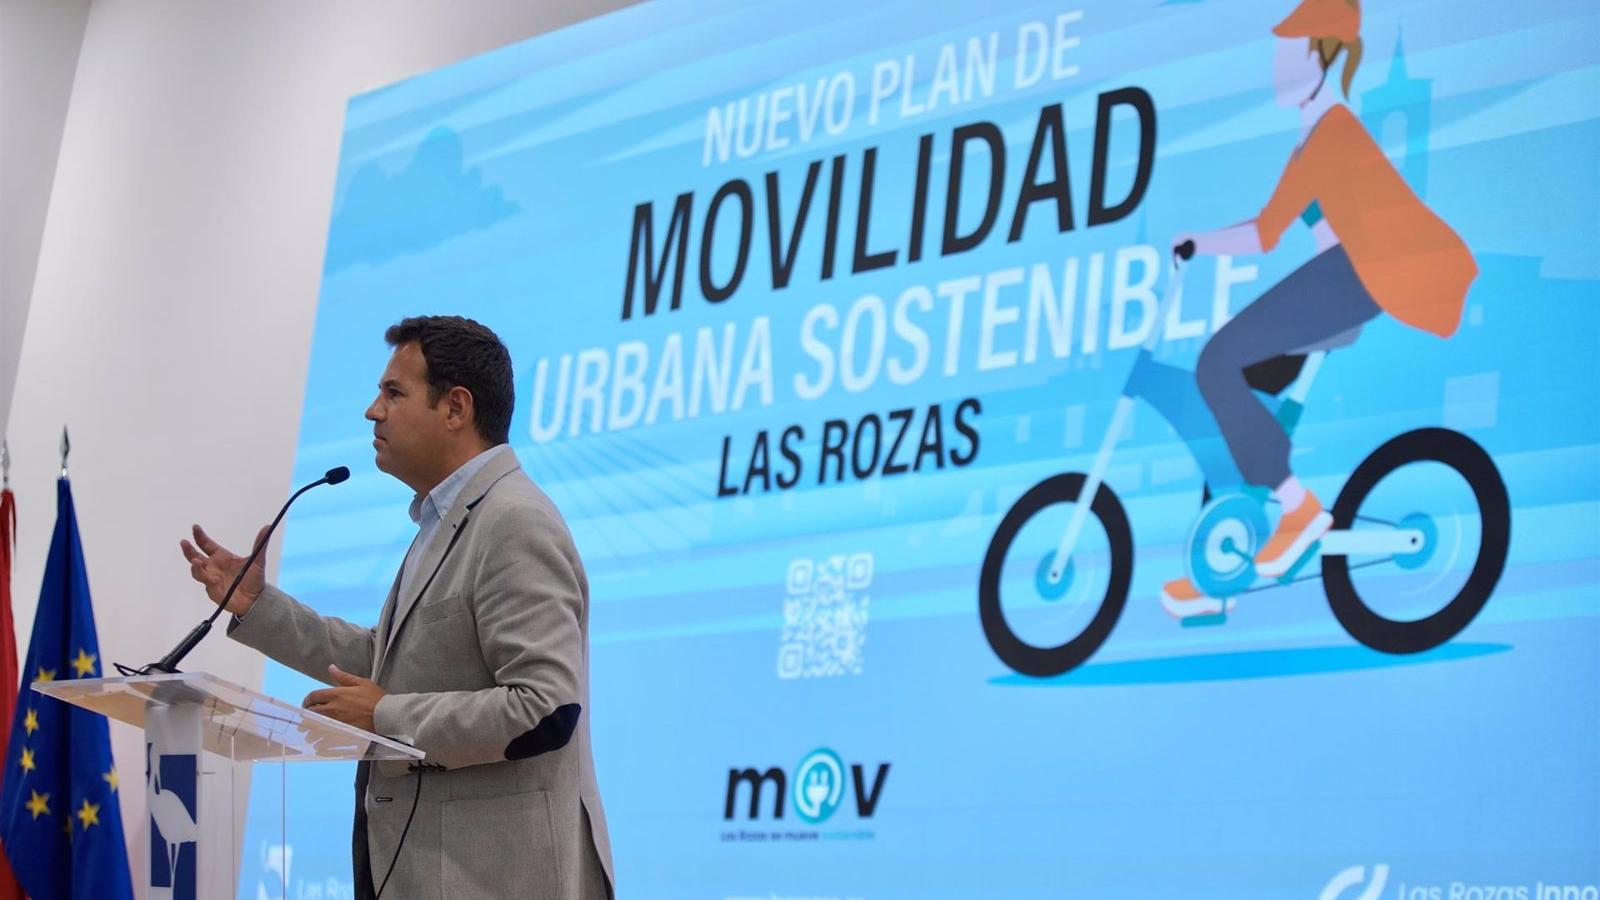 El Plan de Movilidad Urbana Sostenible de Las Rozas buscará mejorar las conexiones y la protección del medio ambiente